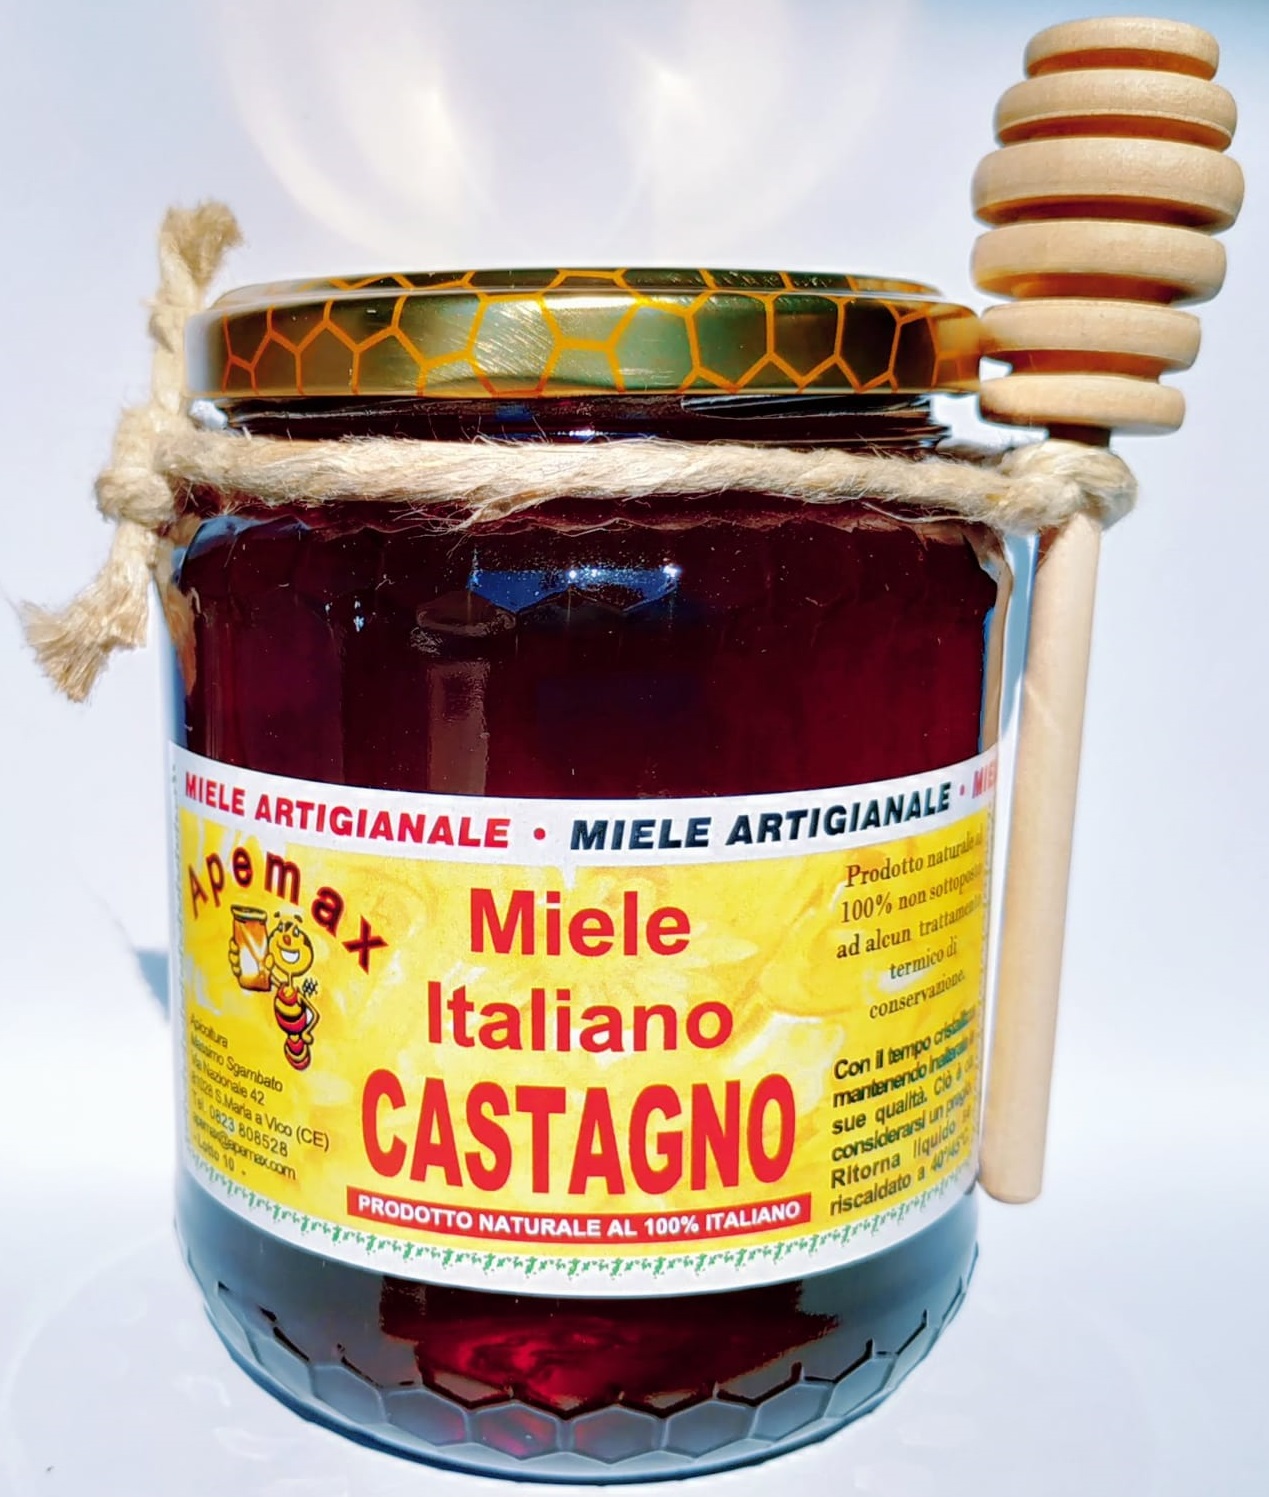 Miele Castagno, Miele, Campania, Prodotti tipici, vendita miele online, cucina, cibo, apicoltura, api